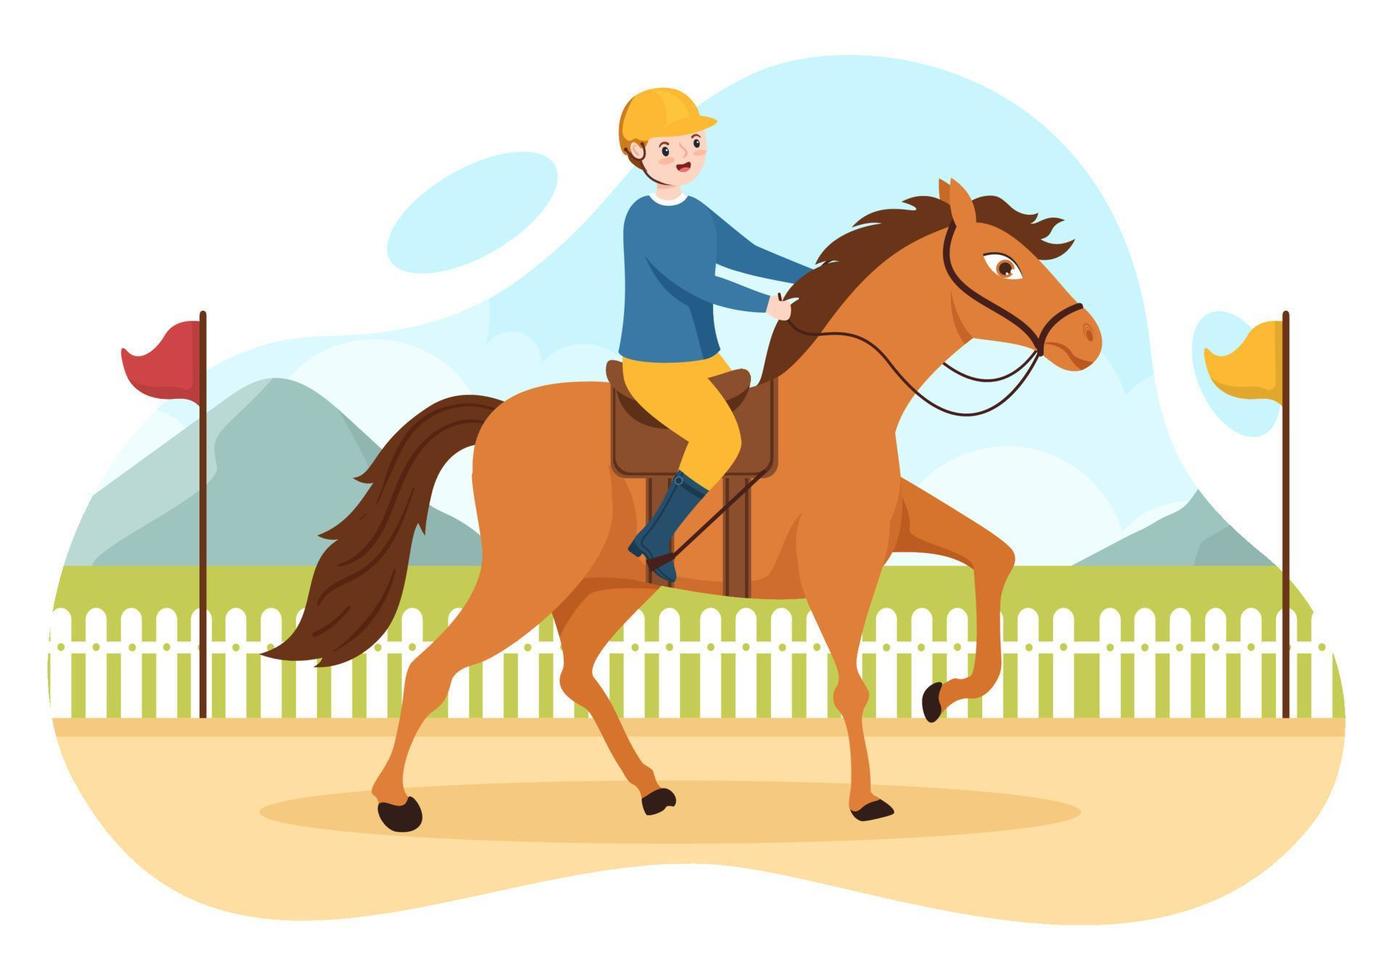 illustrazione del fumetto di corsa di cavalli con personaggi che fanno campionati sportivi da competizione o sport equestri in ippodromo vettore